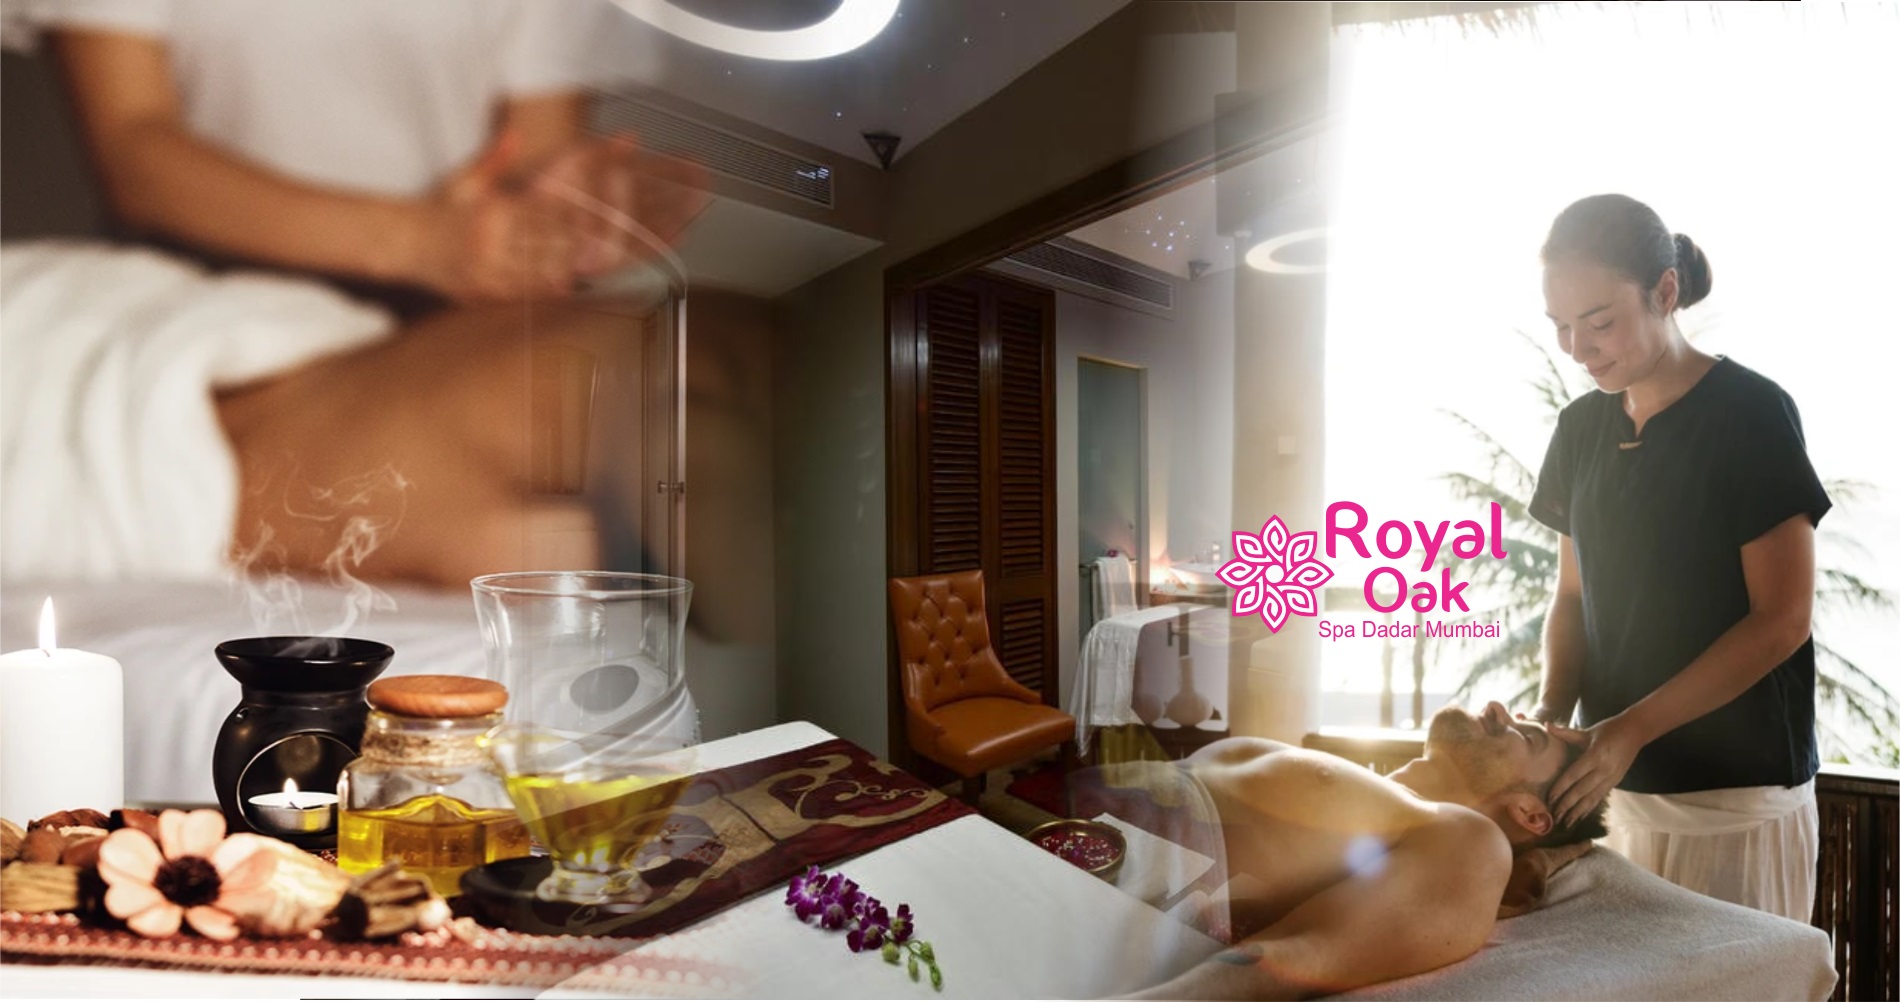 Royal Oak Spa Dadar Mumbai